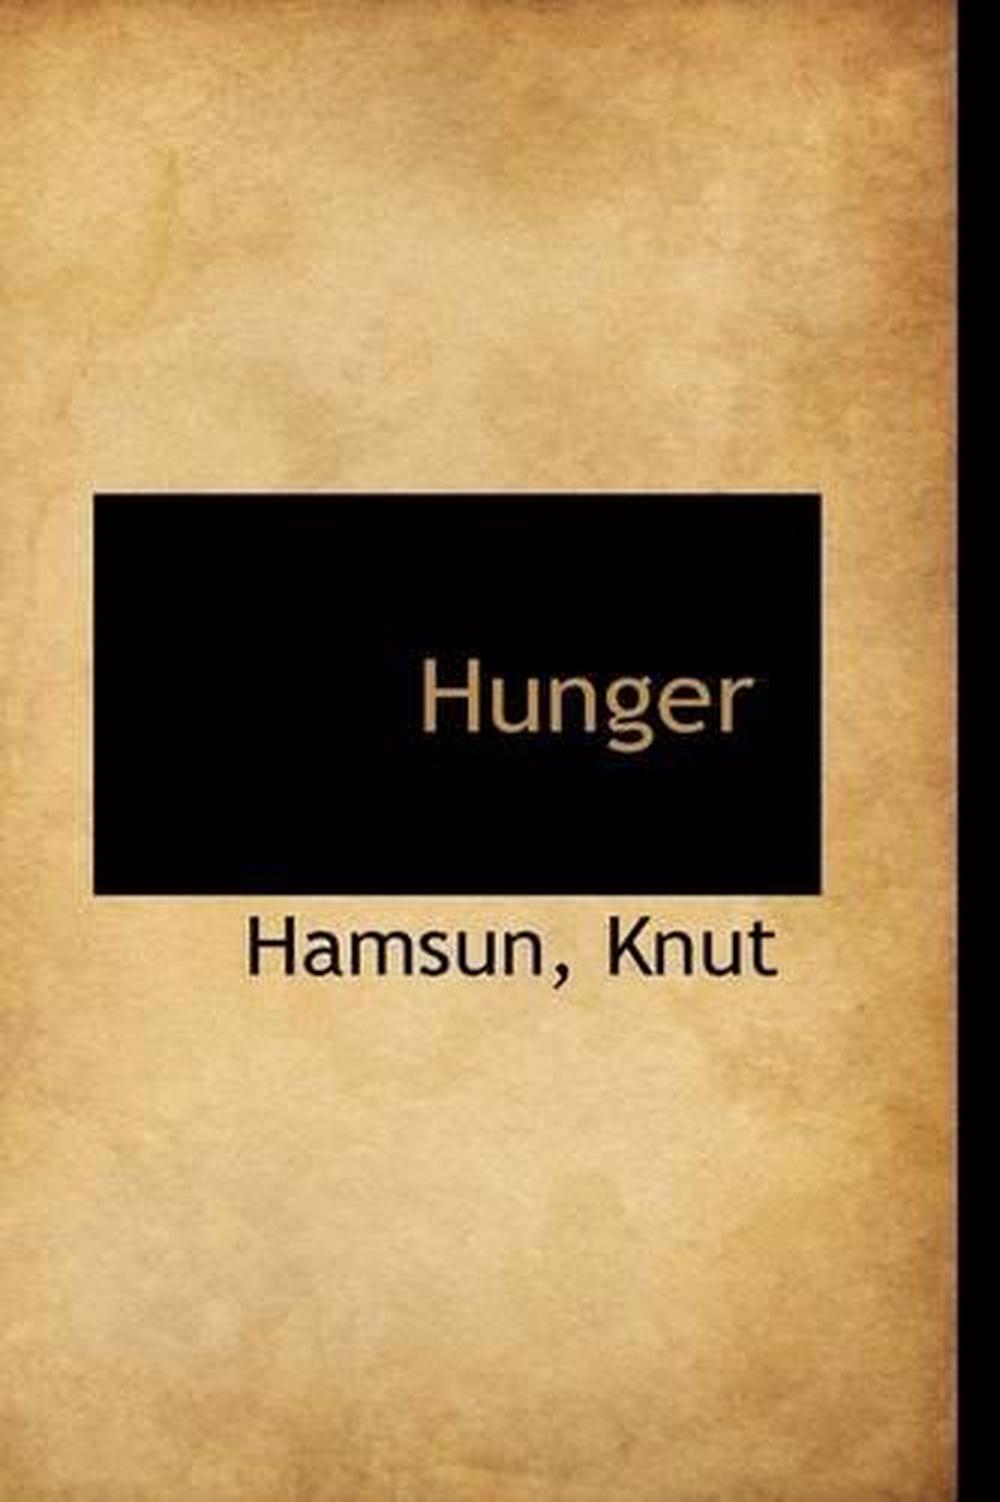 hunger book knut